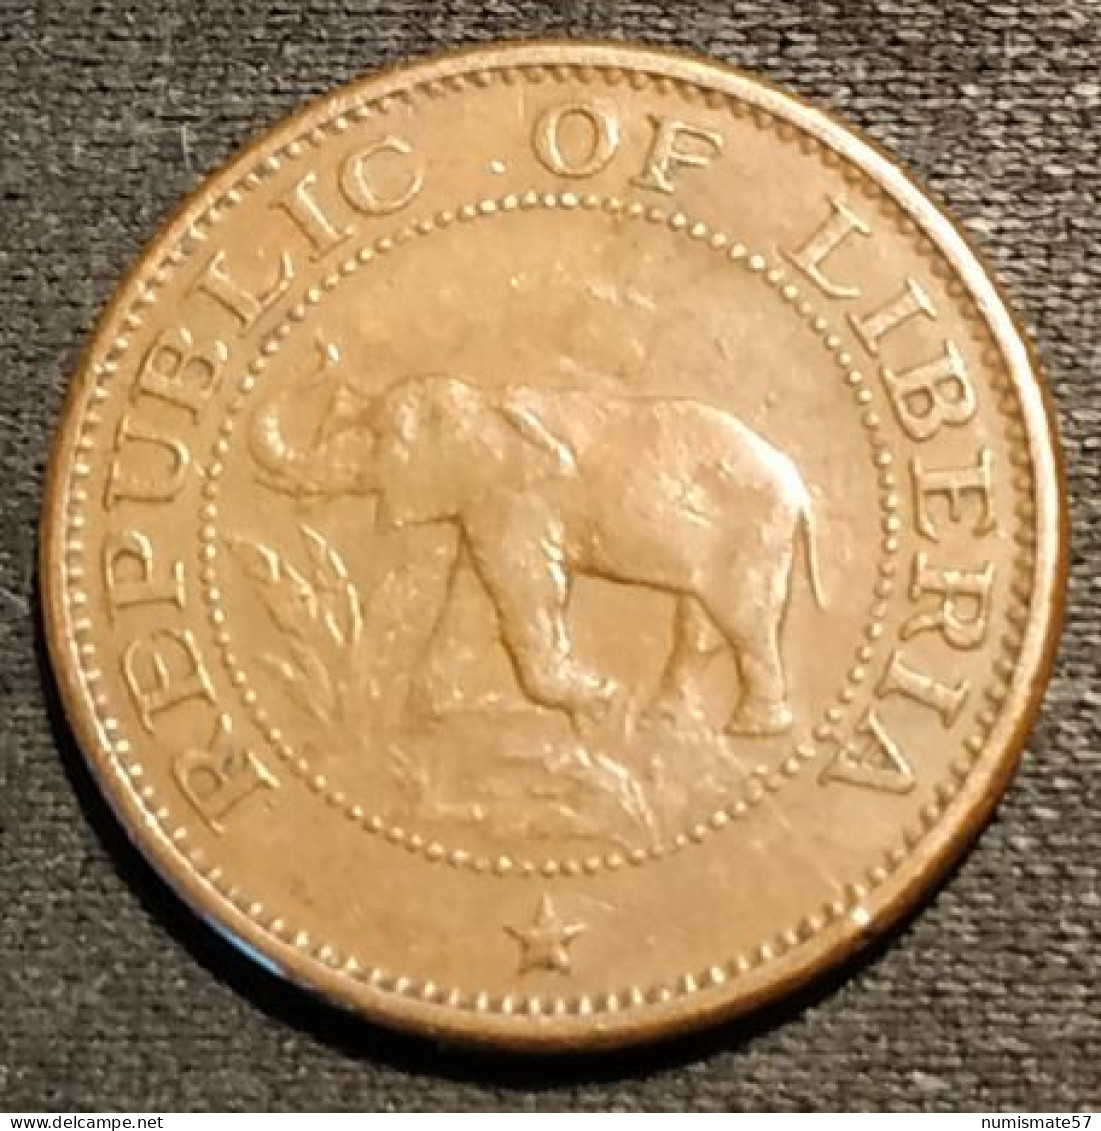 RARE - LIBERIA - 1 CENT 1960 - Eléphant - KM 13 - ( 500 000 Ex. ) - Liberia